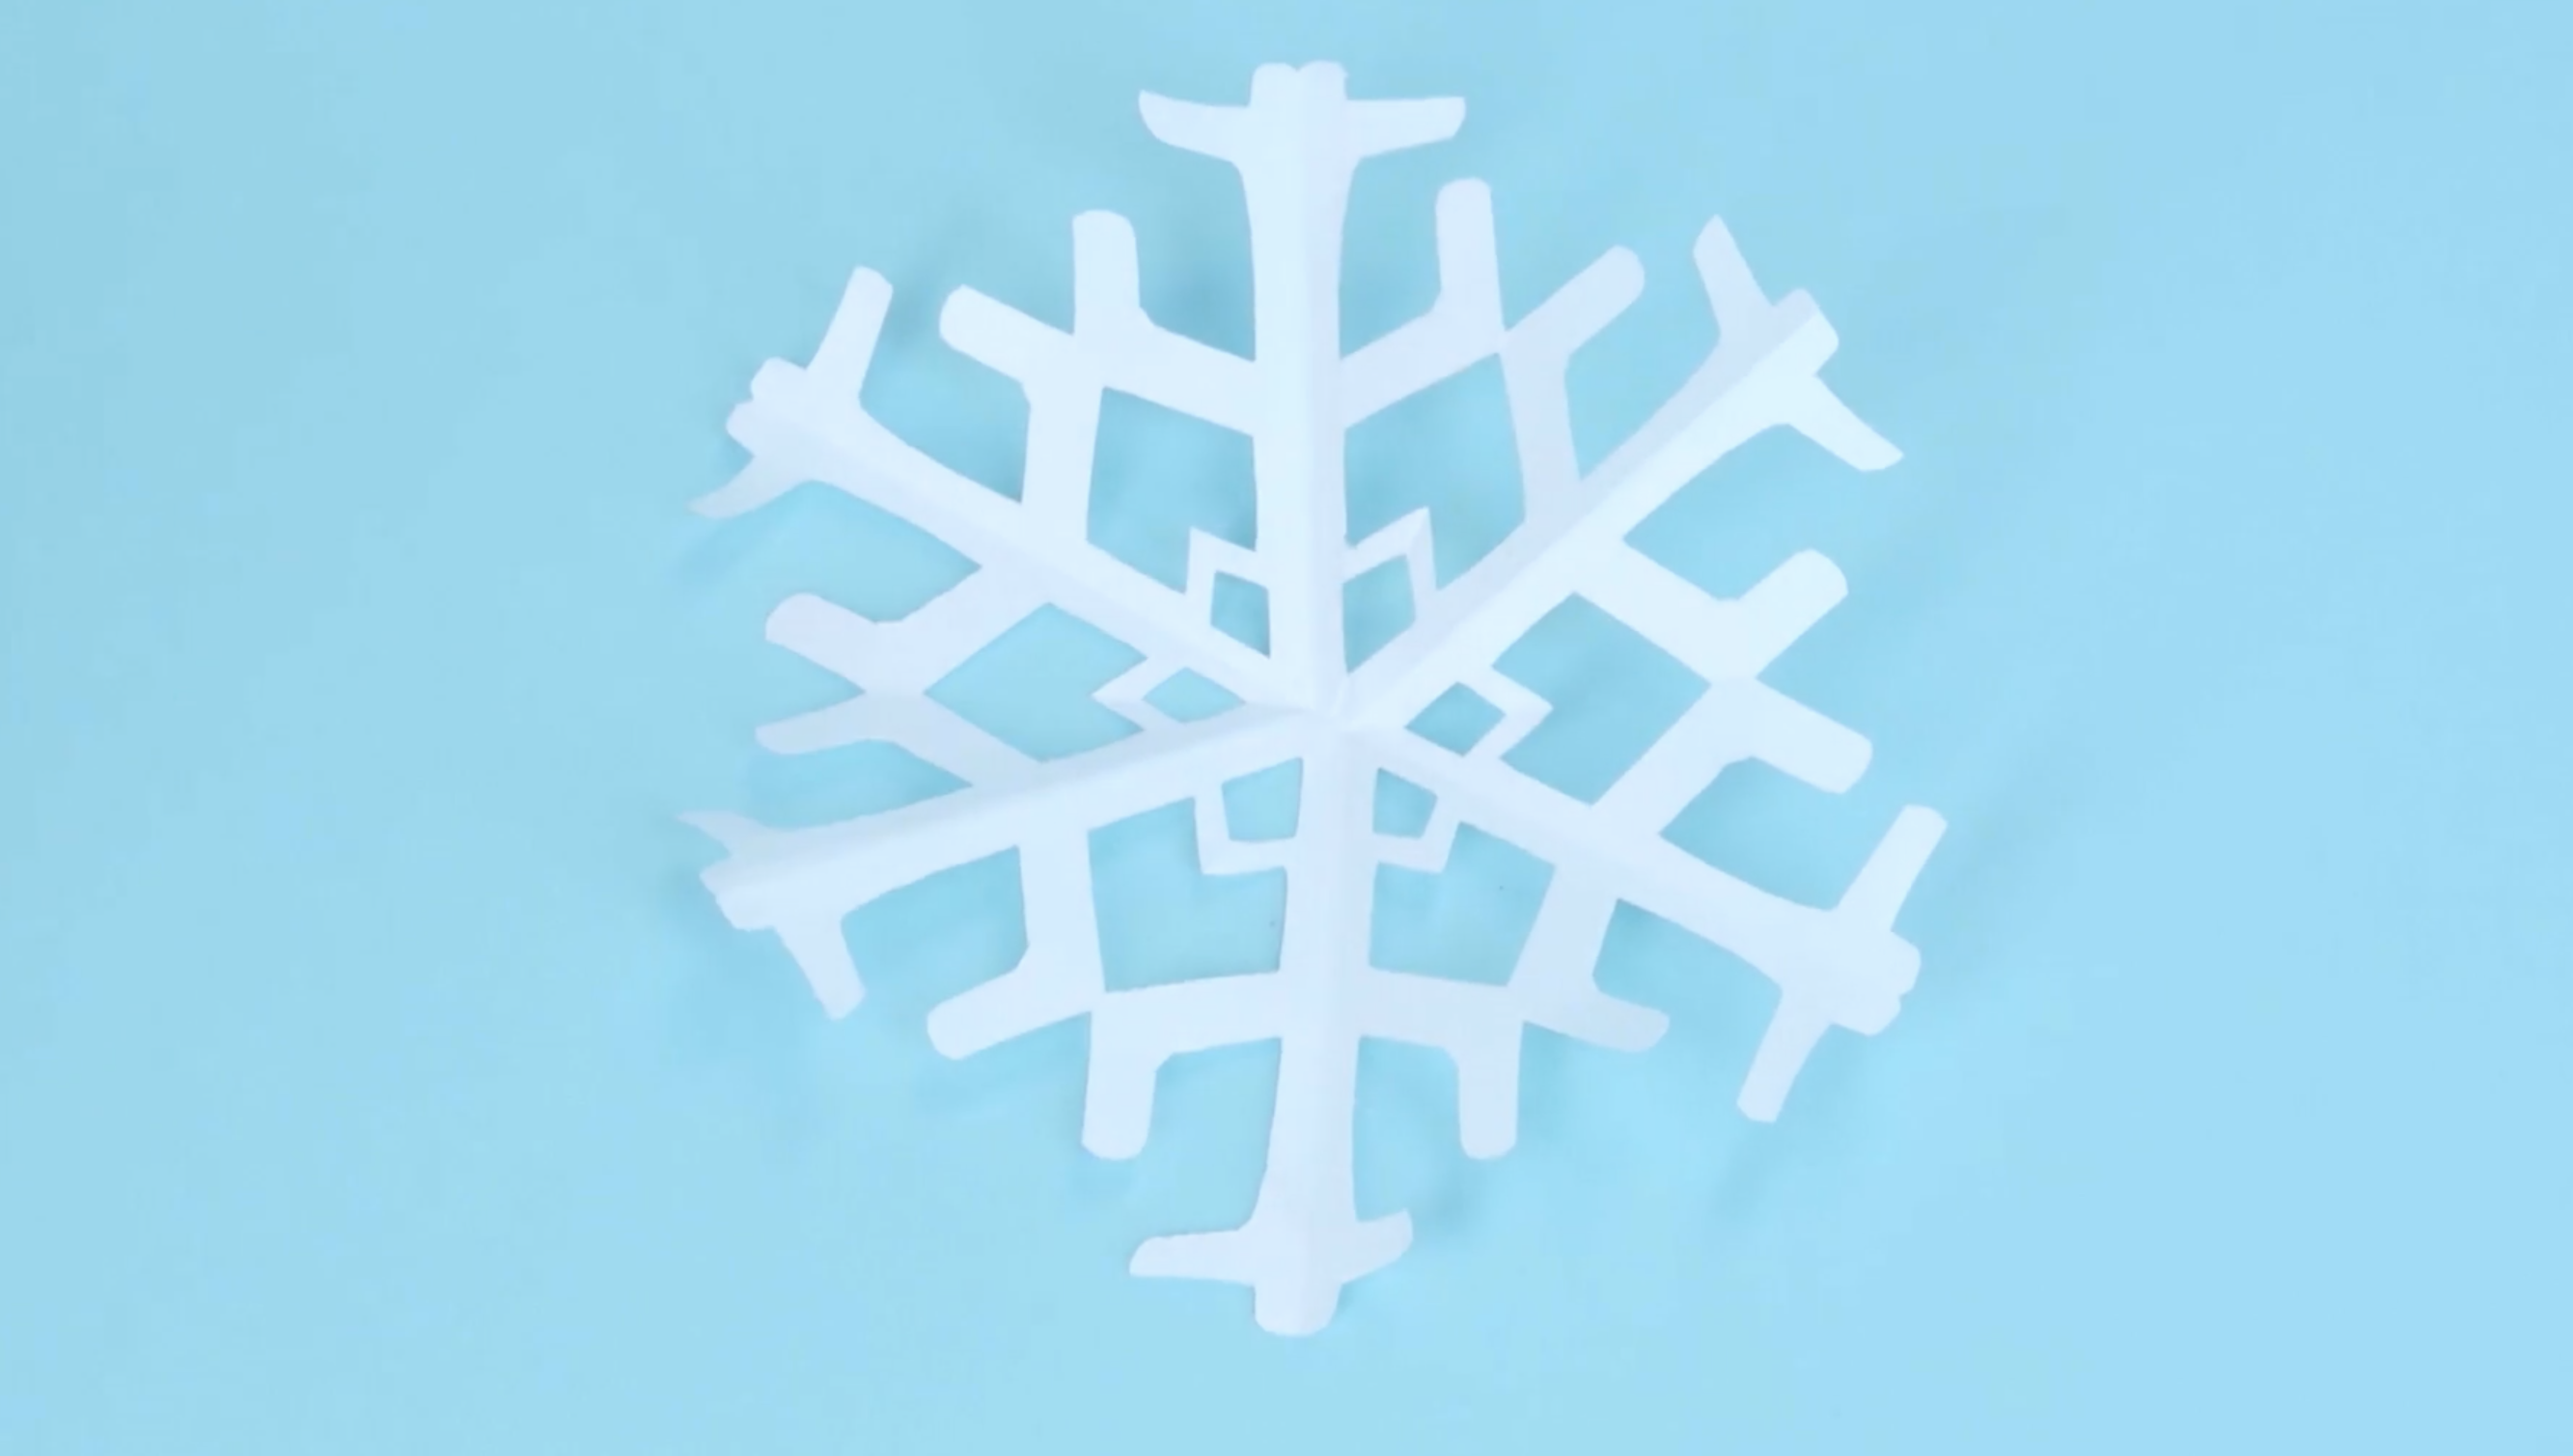 Free Stock Photo of Snow Flakes Background Shows Seasonal